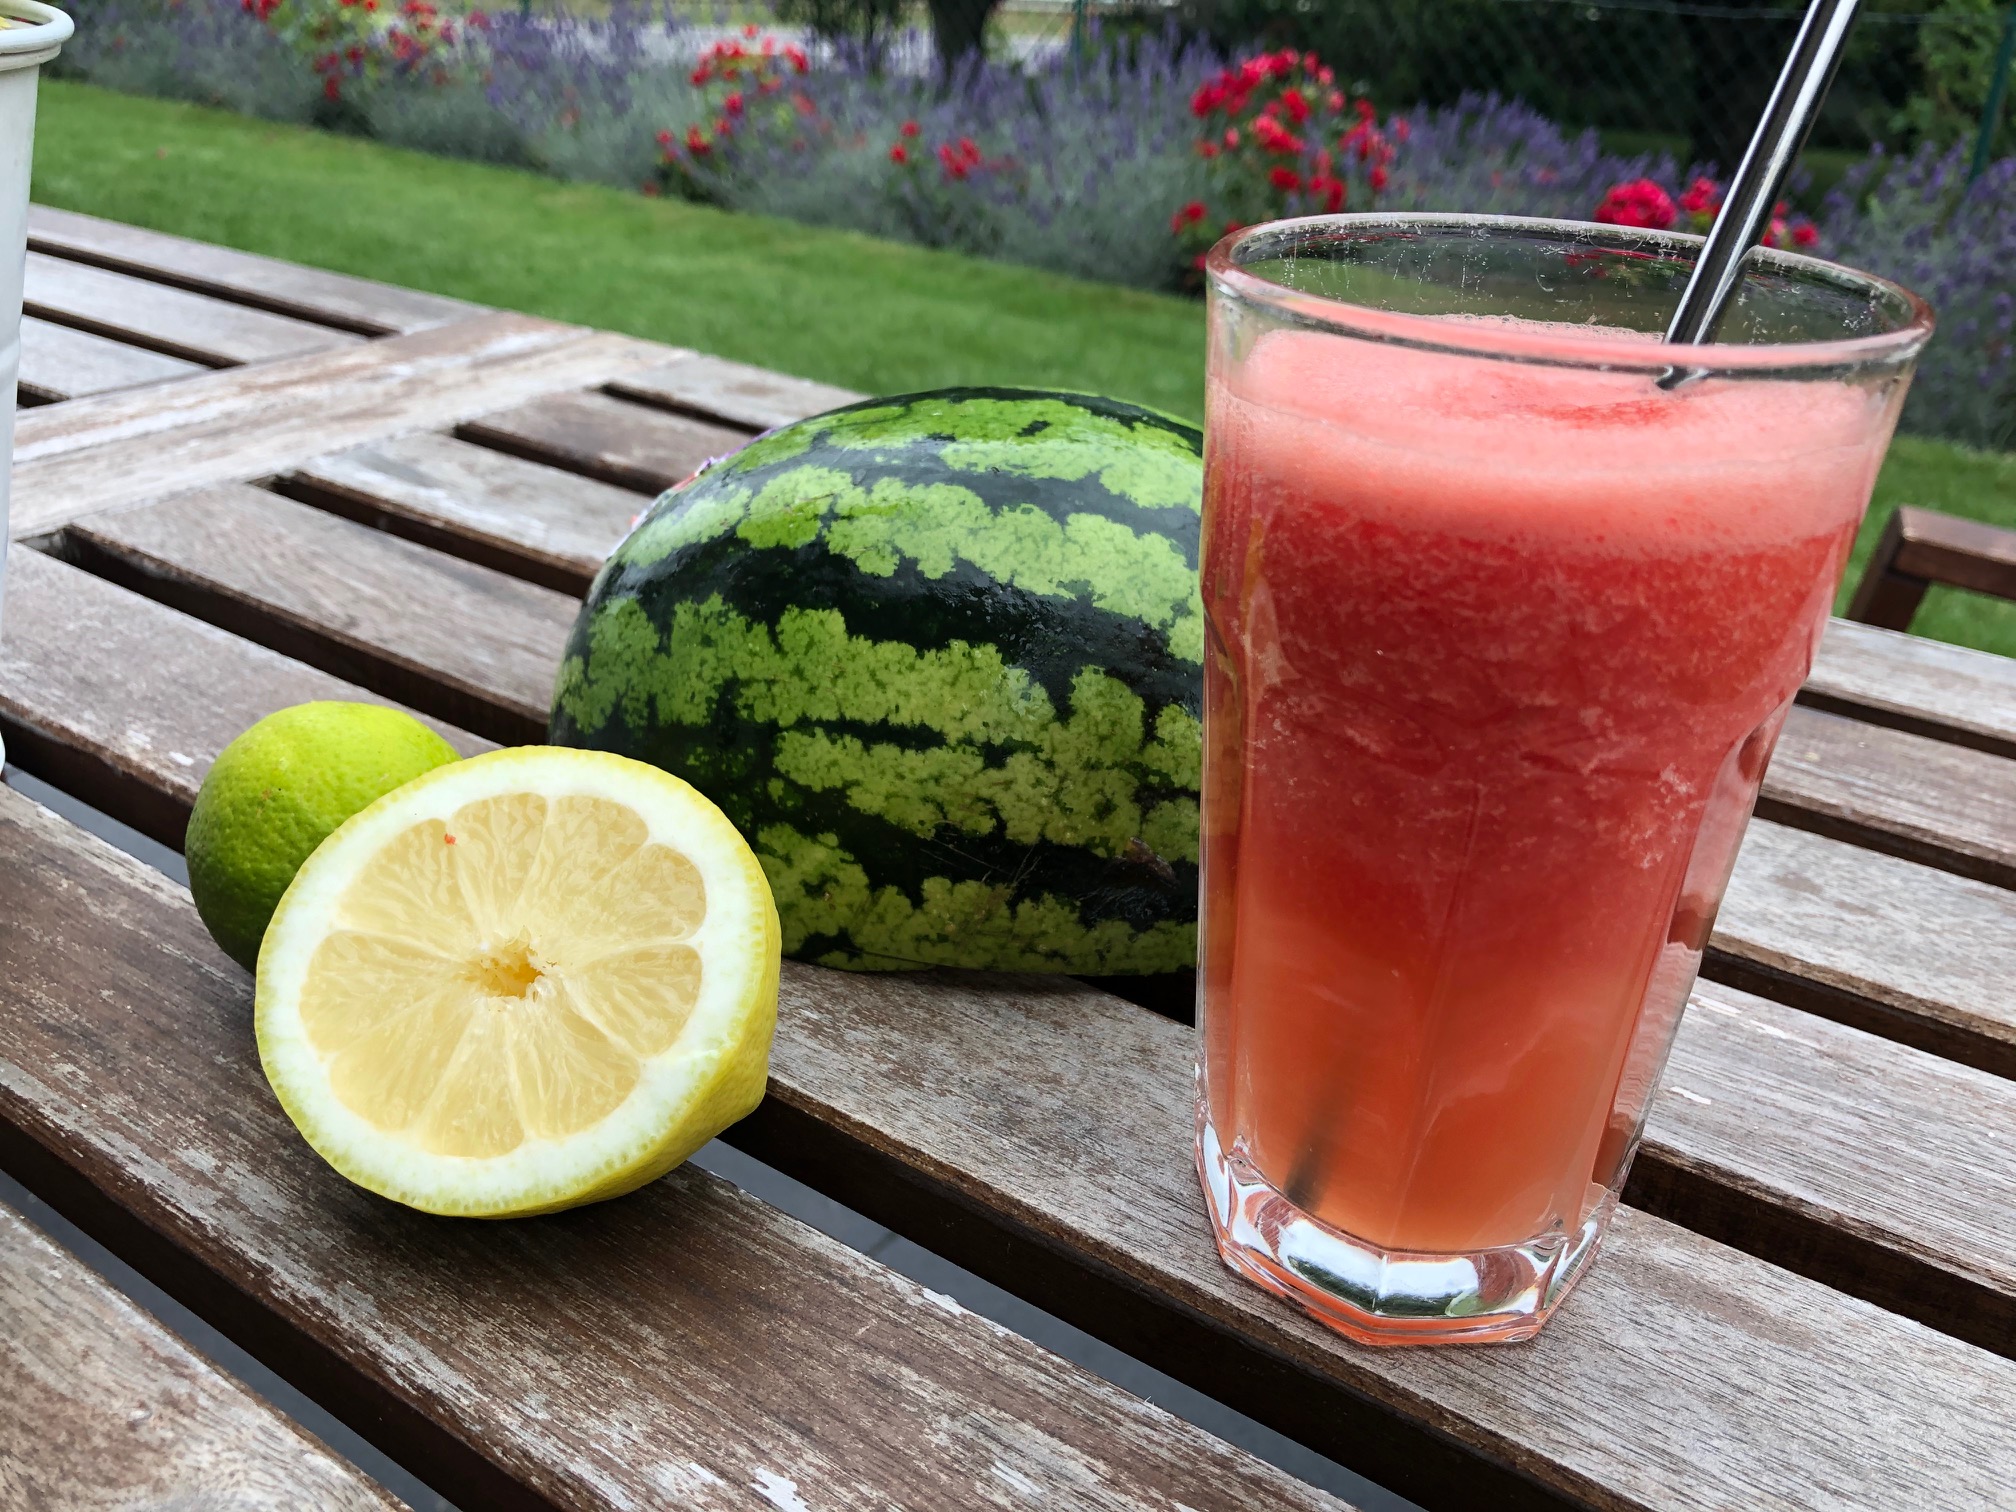 Erfrischung ohne Zucker: Limonade aus Wassermelone